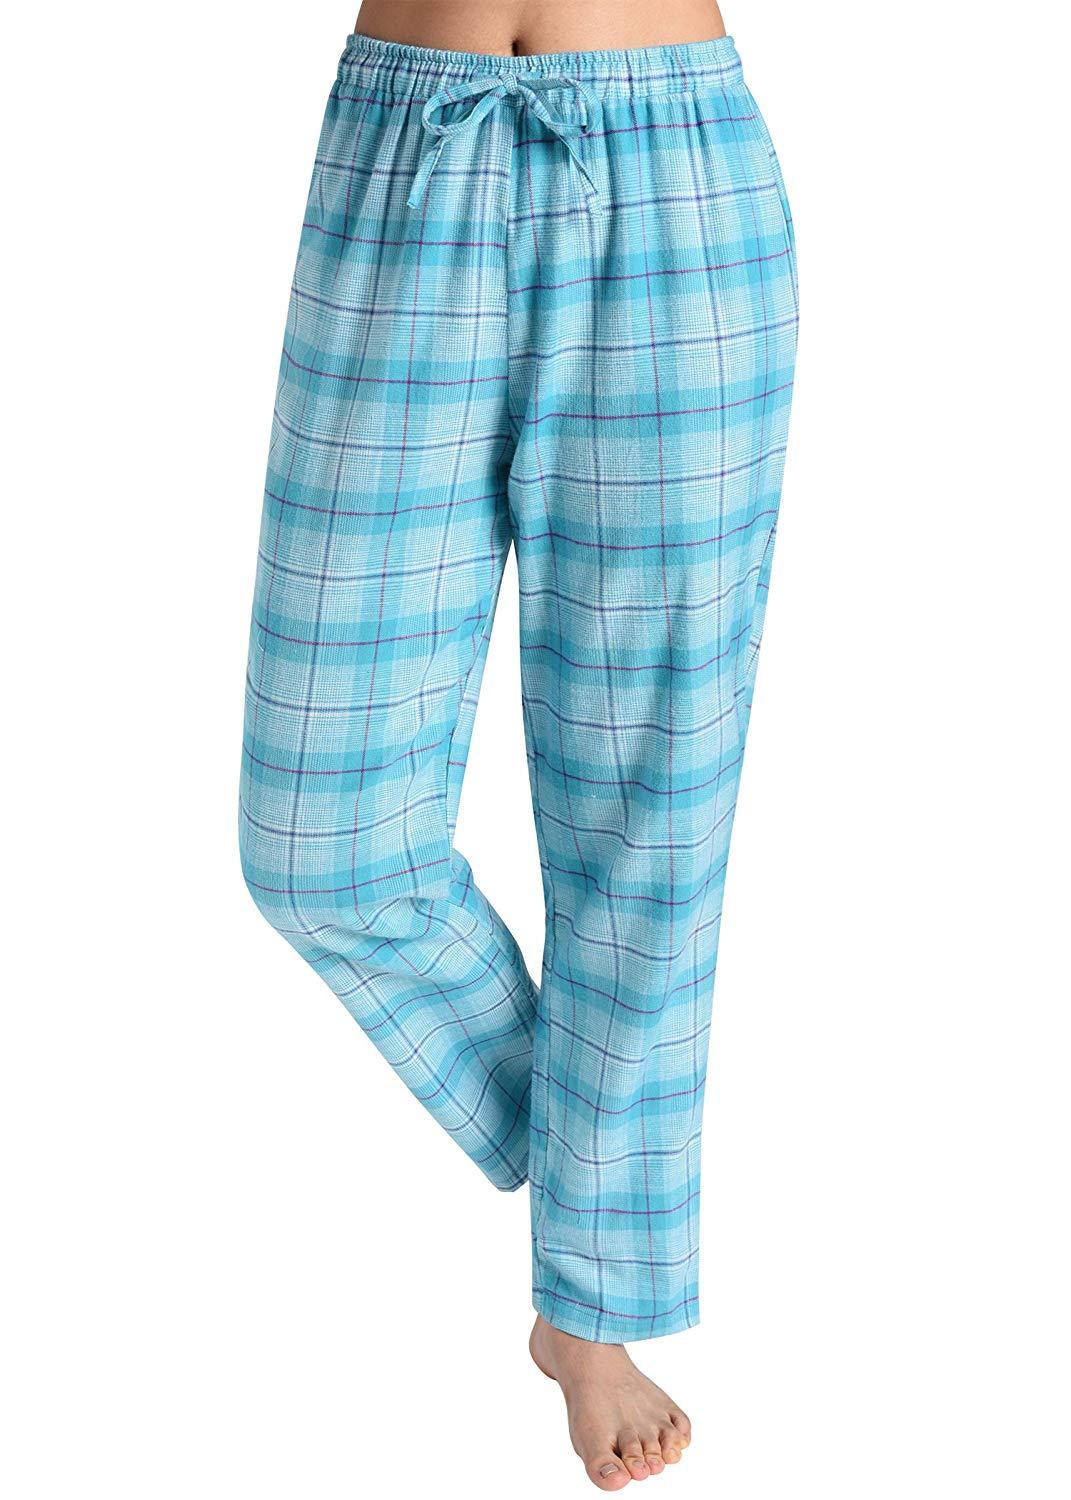 Plaid Pyjama Pants - Light blue plaid